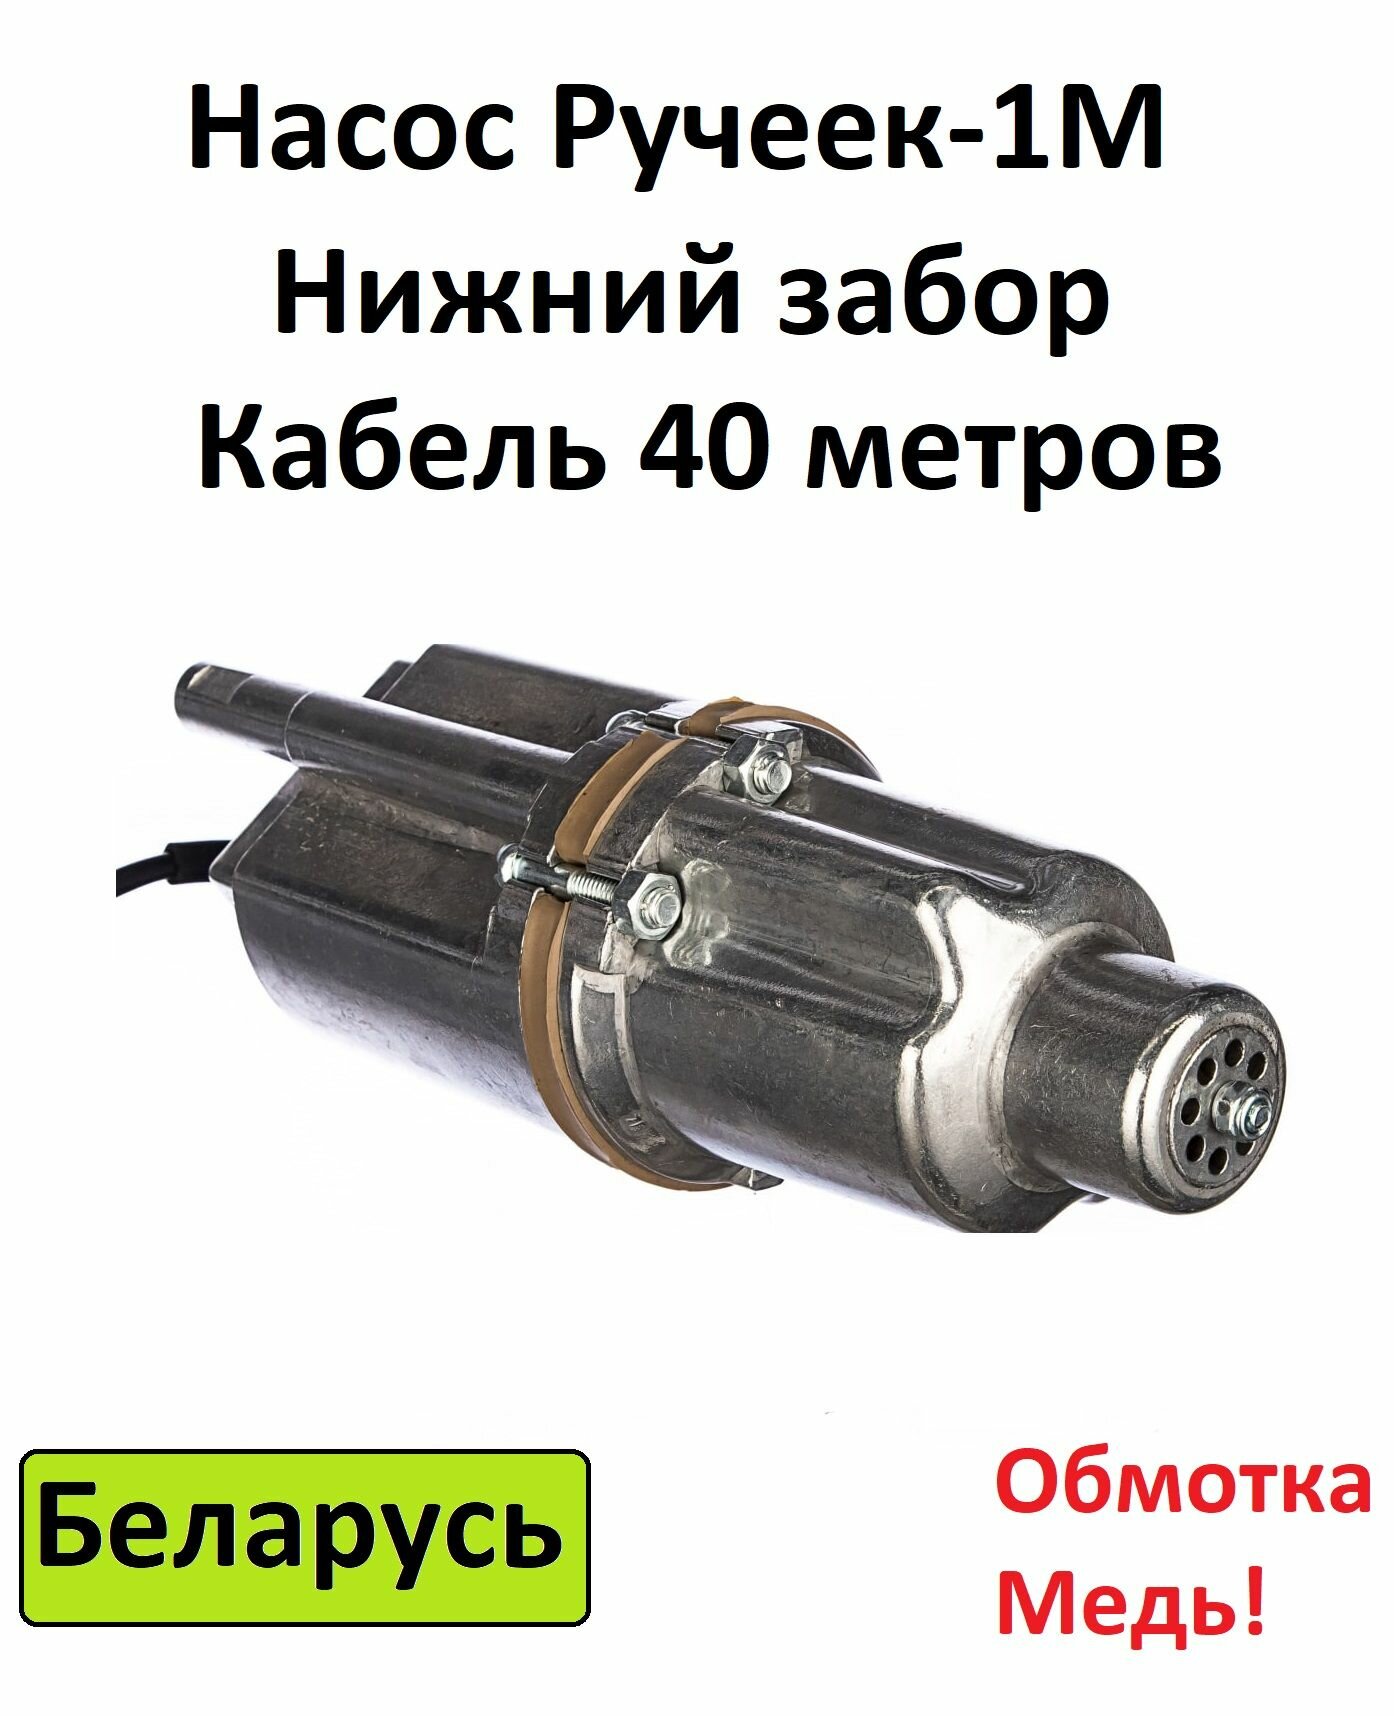 Насос Могилев Ручеёк-1М кабель 40 м нижний забор (Беларусь)